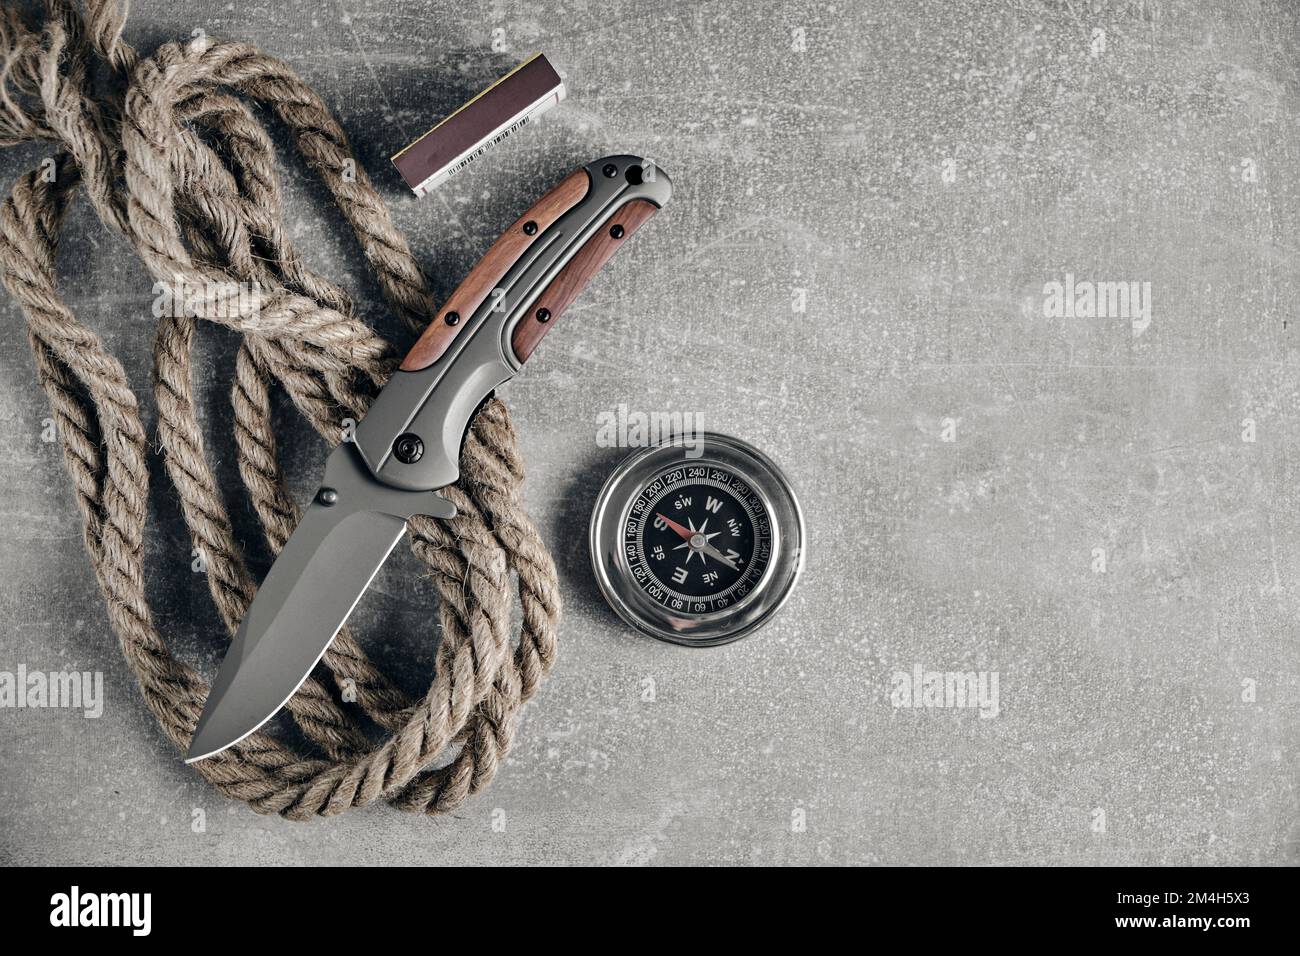 Couteau pliant tactique pour survie, corde, allumettes et compas, kit de survie dans des conditions difficiles Banque D'Images